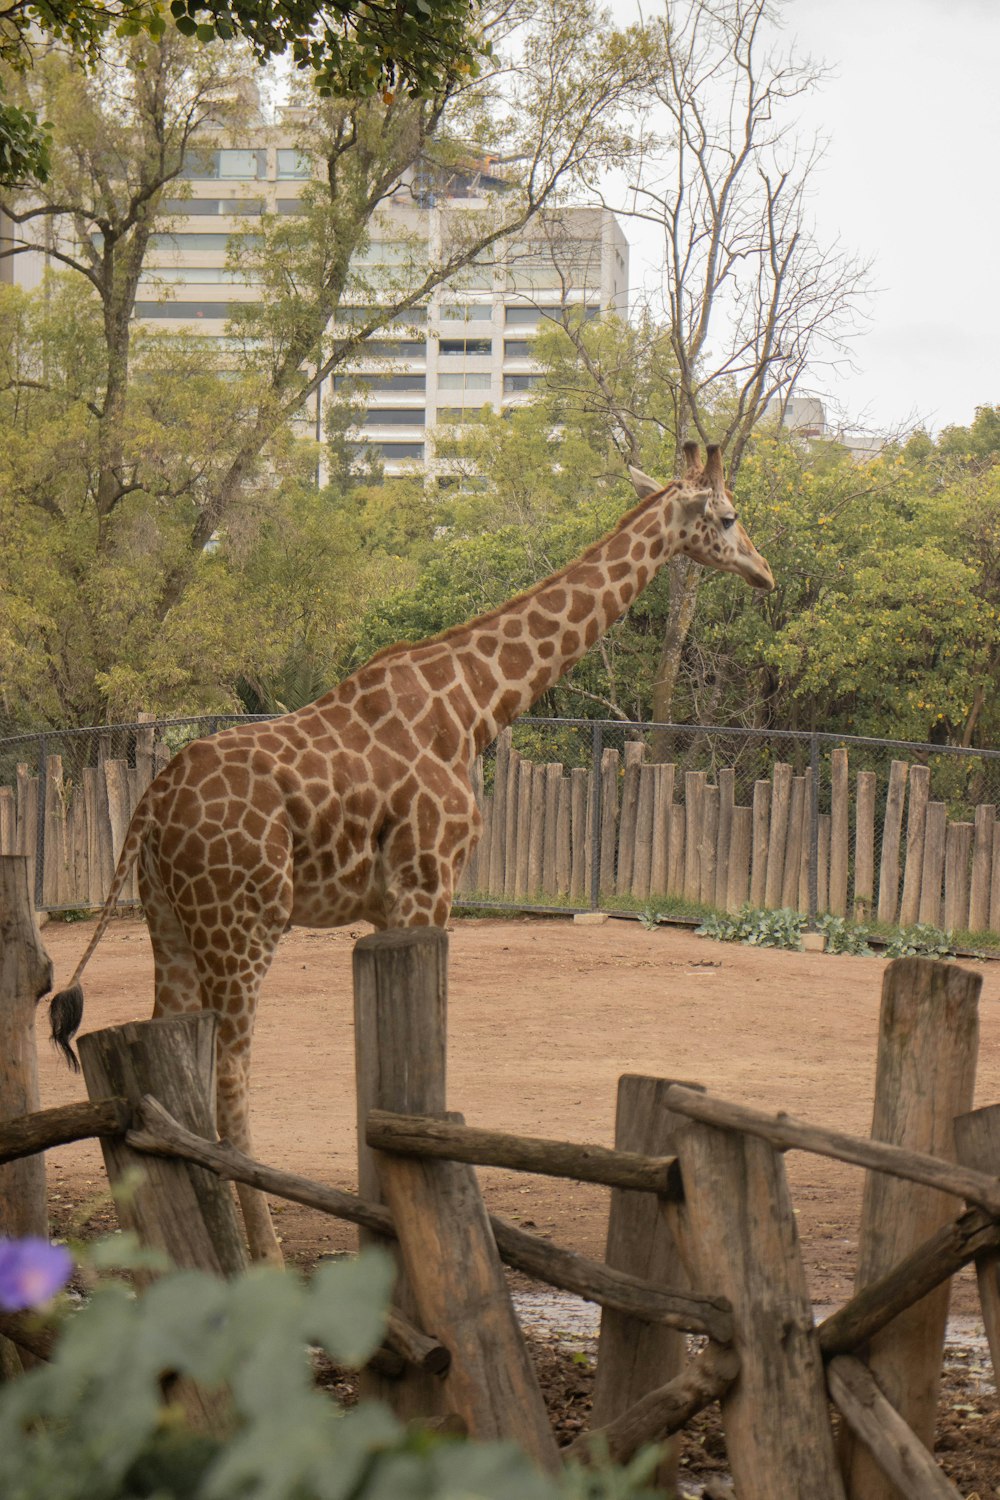 a giraffe standing on top of a dirt field